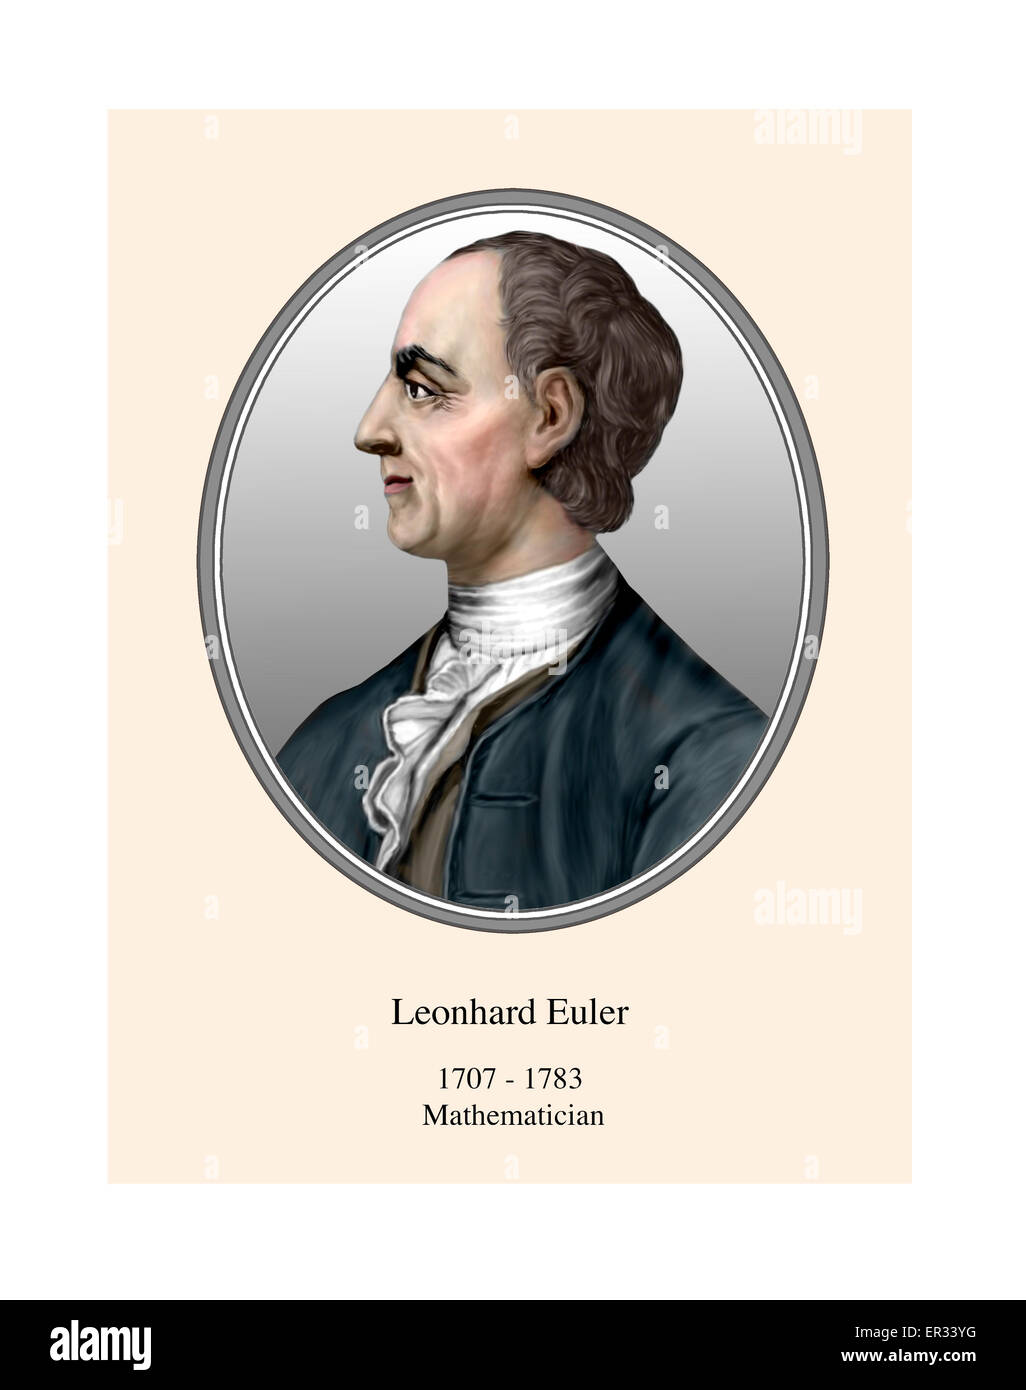 Leonhard Euler Portrait Modern Illustration Stock Photo